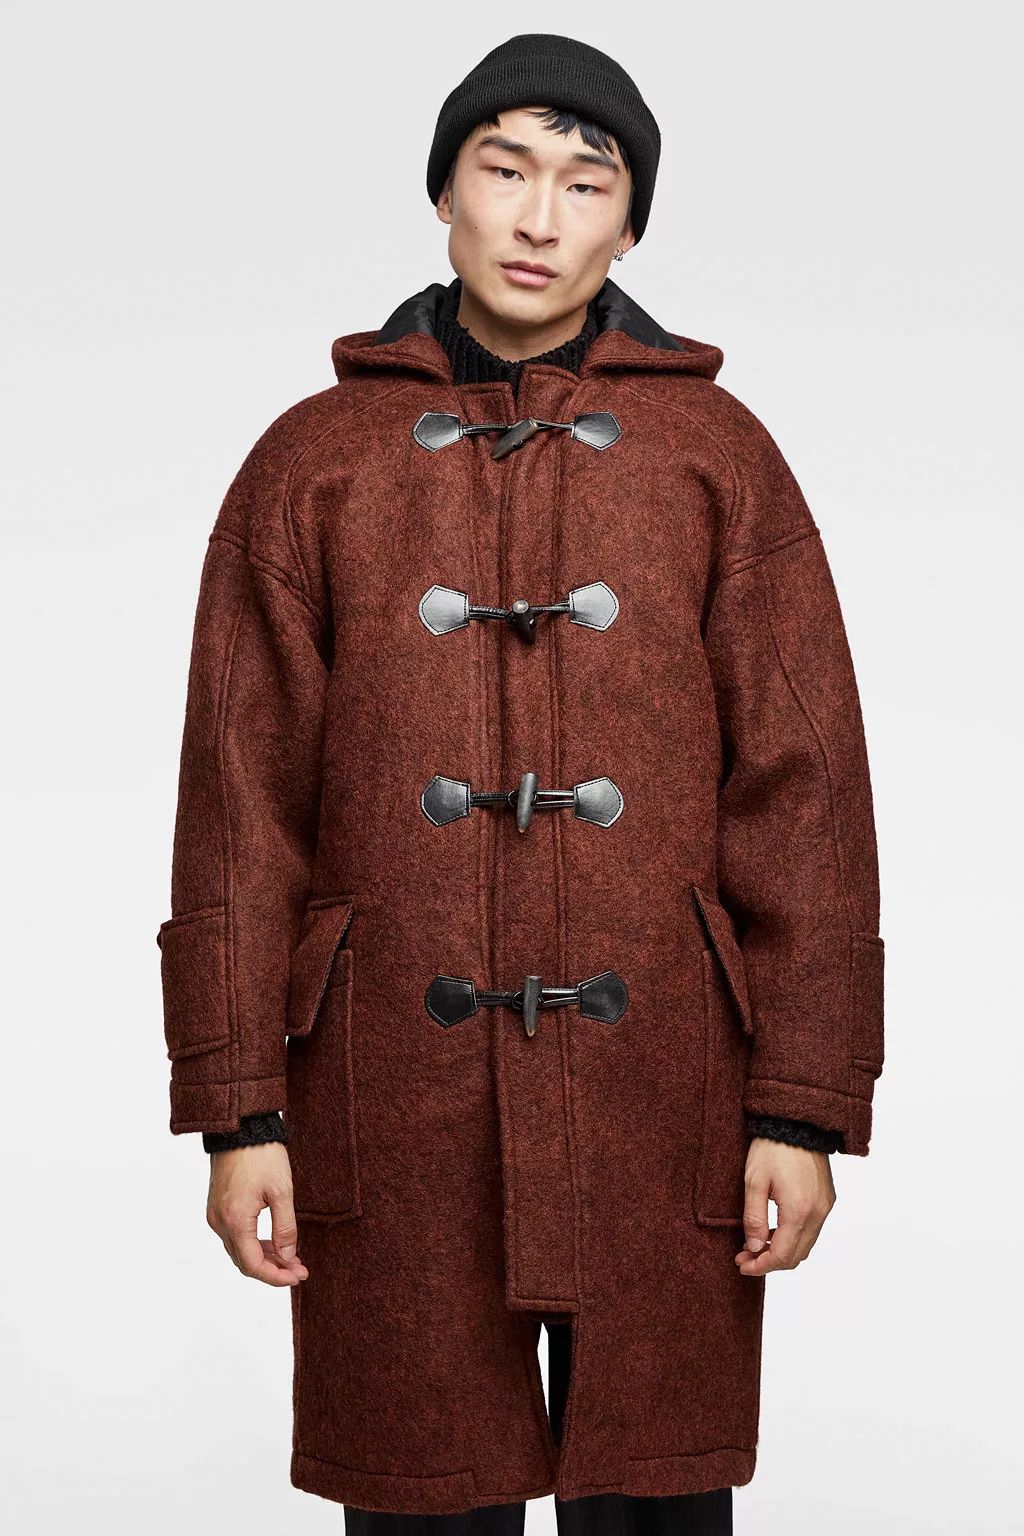 雙十一買件大衣 保暖有型造型不重樣 時尚 第25張